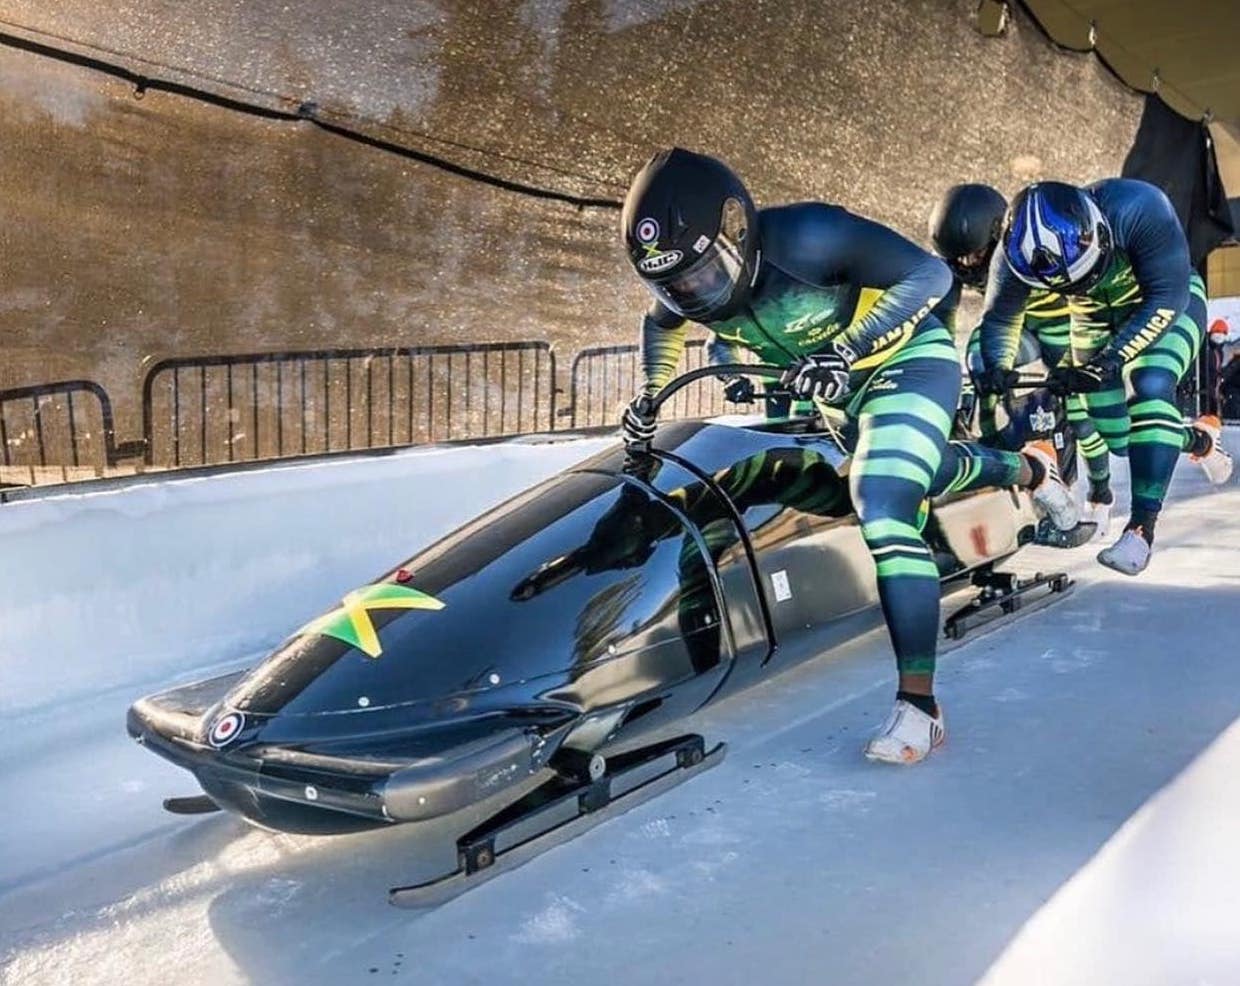 Jamaica clasifica tres equipos de bobsleigh para los JJ. OO. de invierno de Beijing